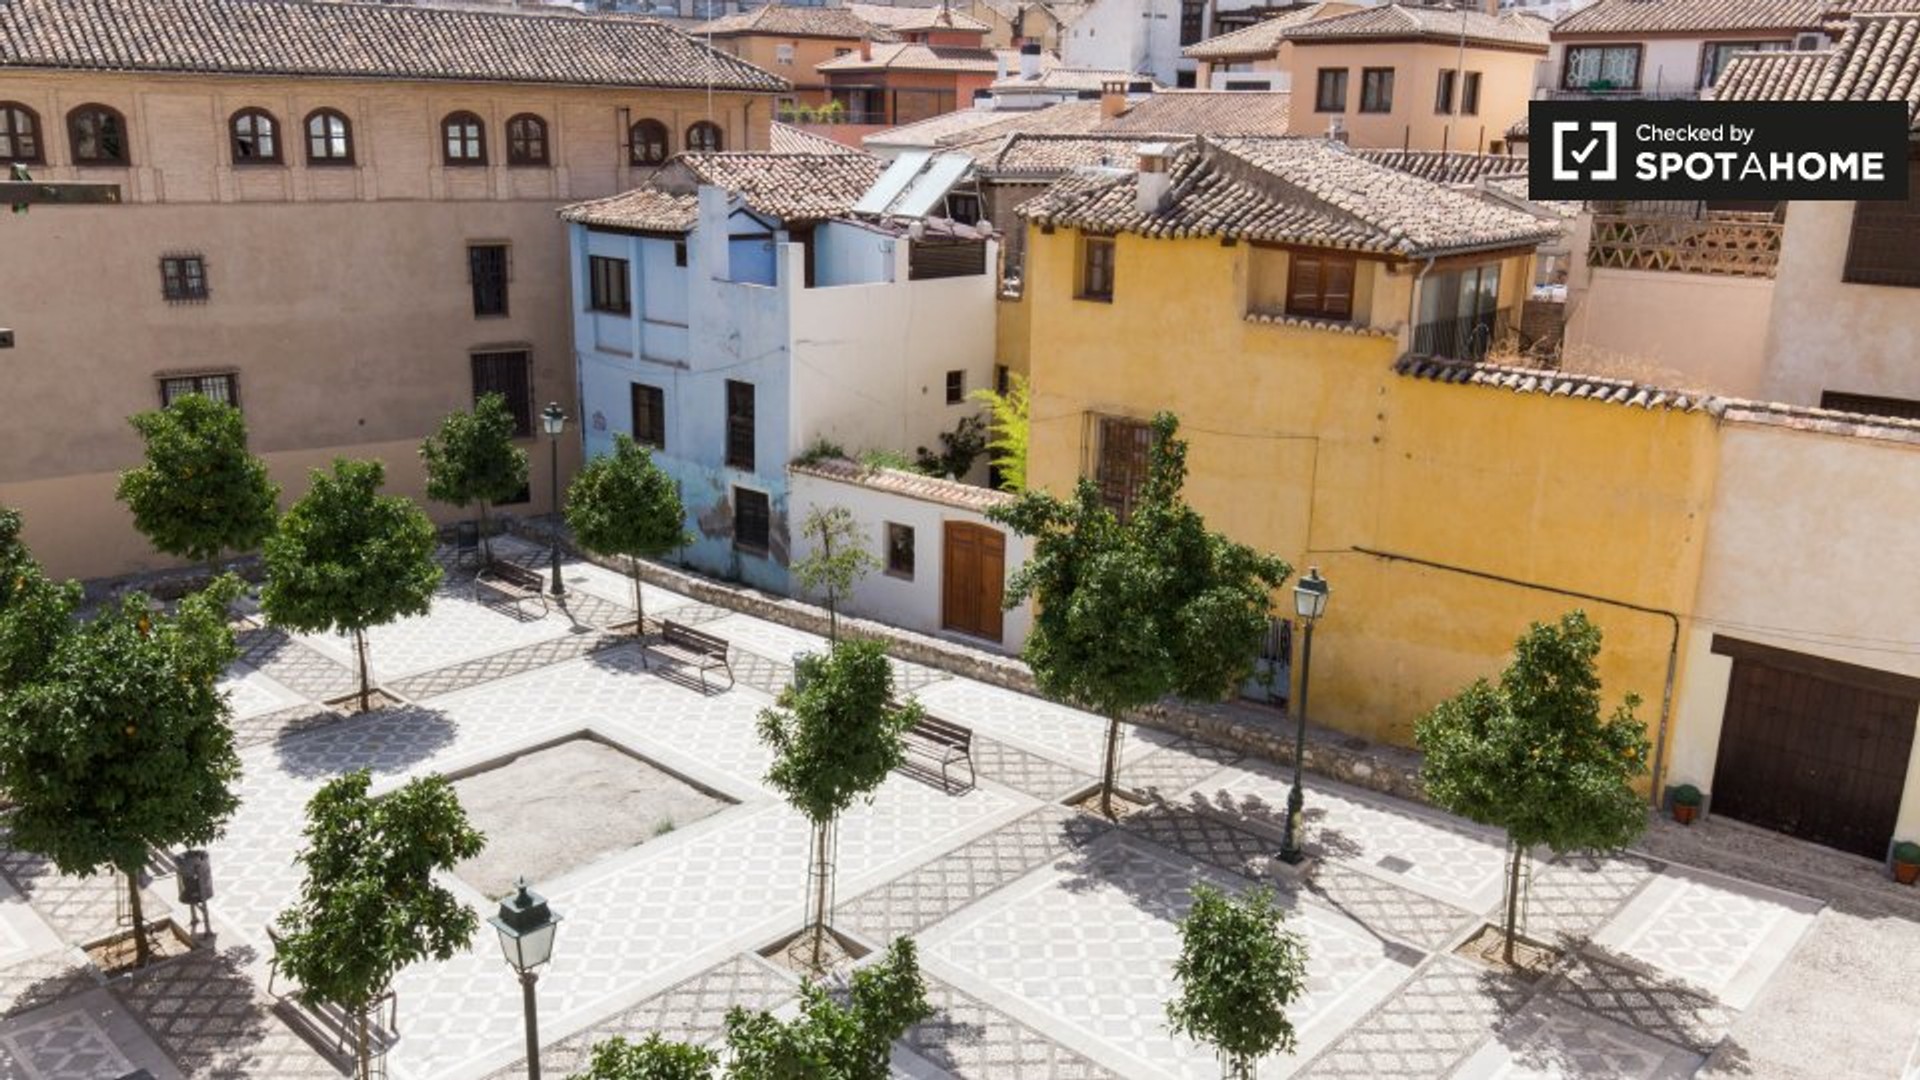 Granada içinde merkezi konumda konaklama